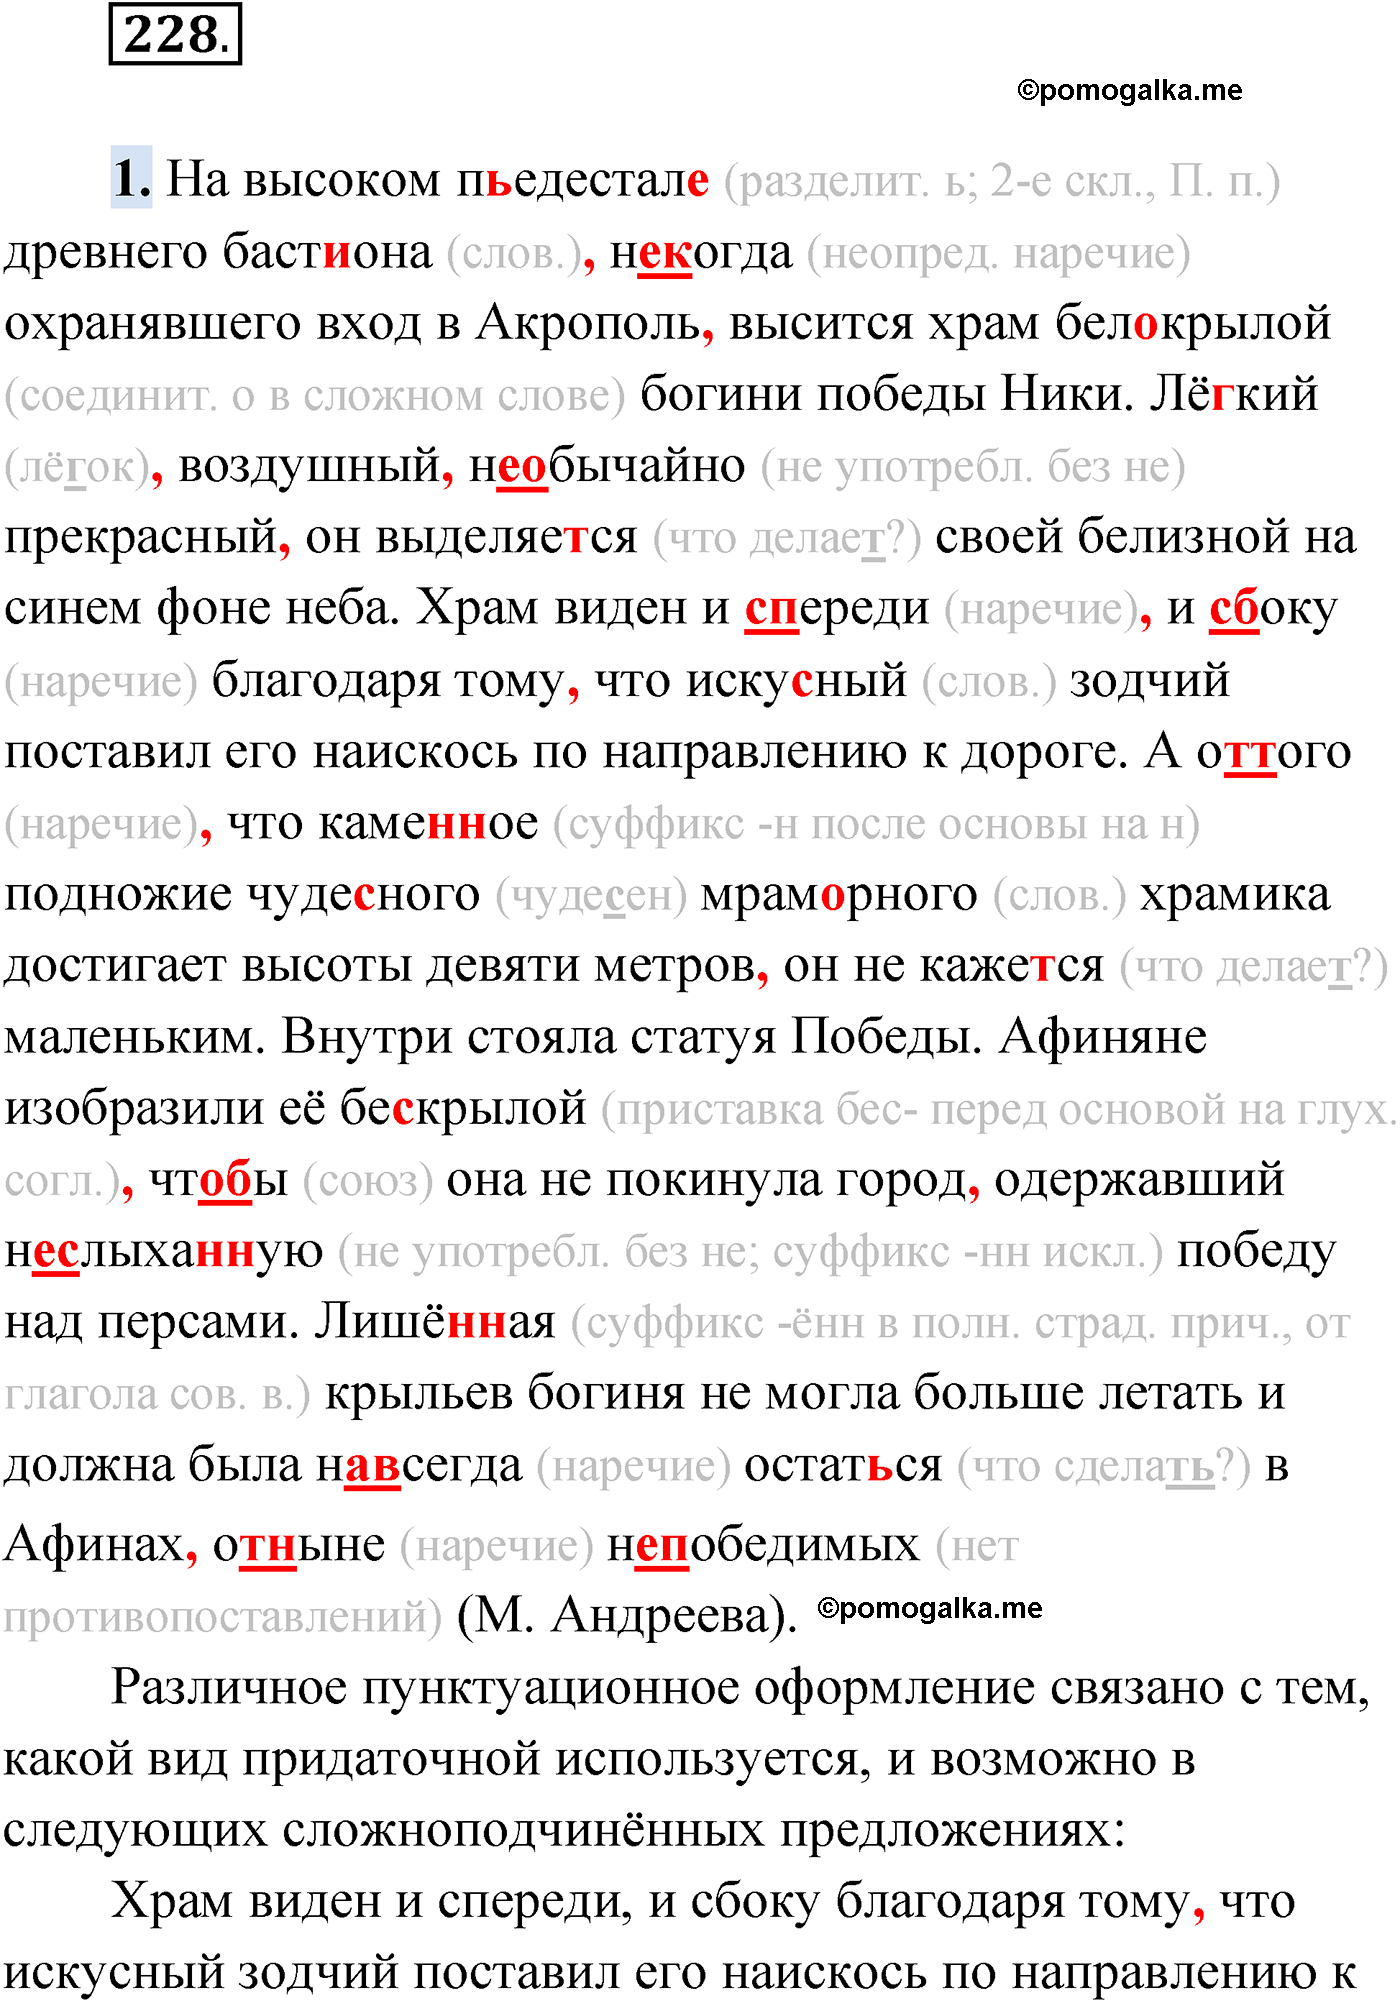 упражнение №228 русский язык 9 класс Мурина 2019 год